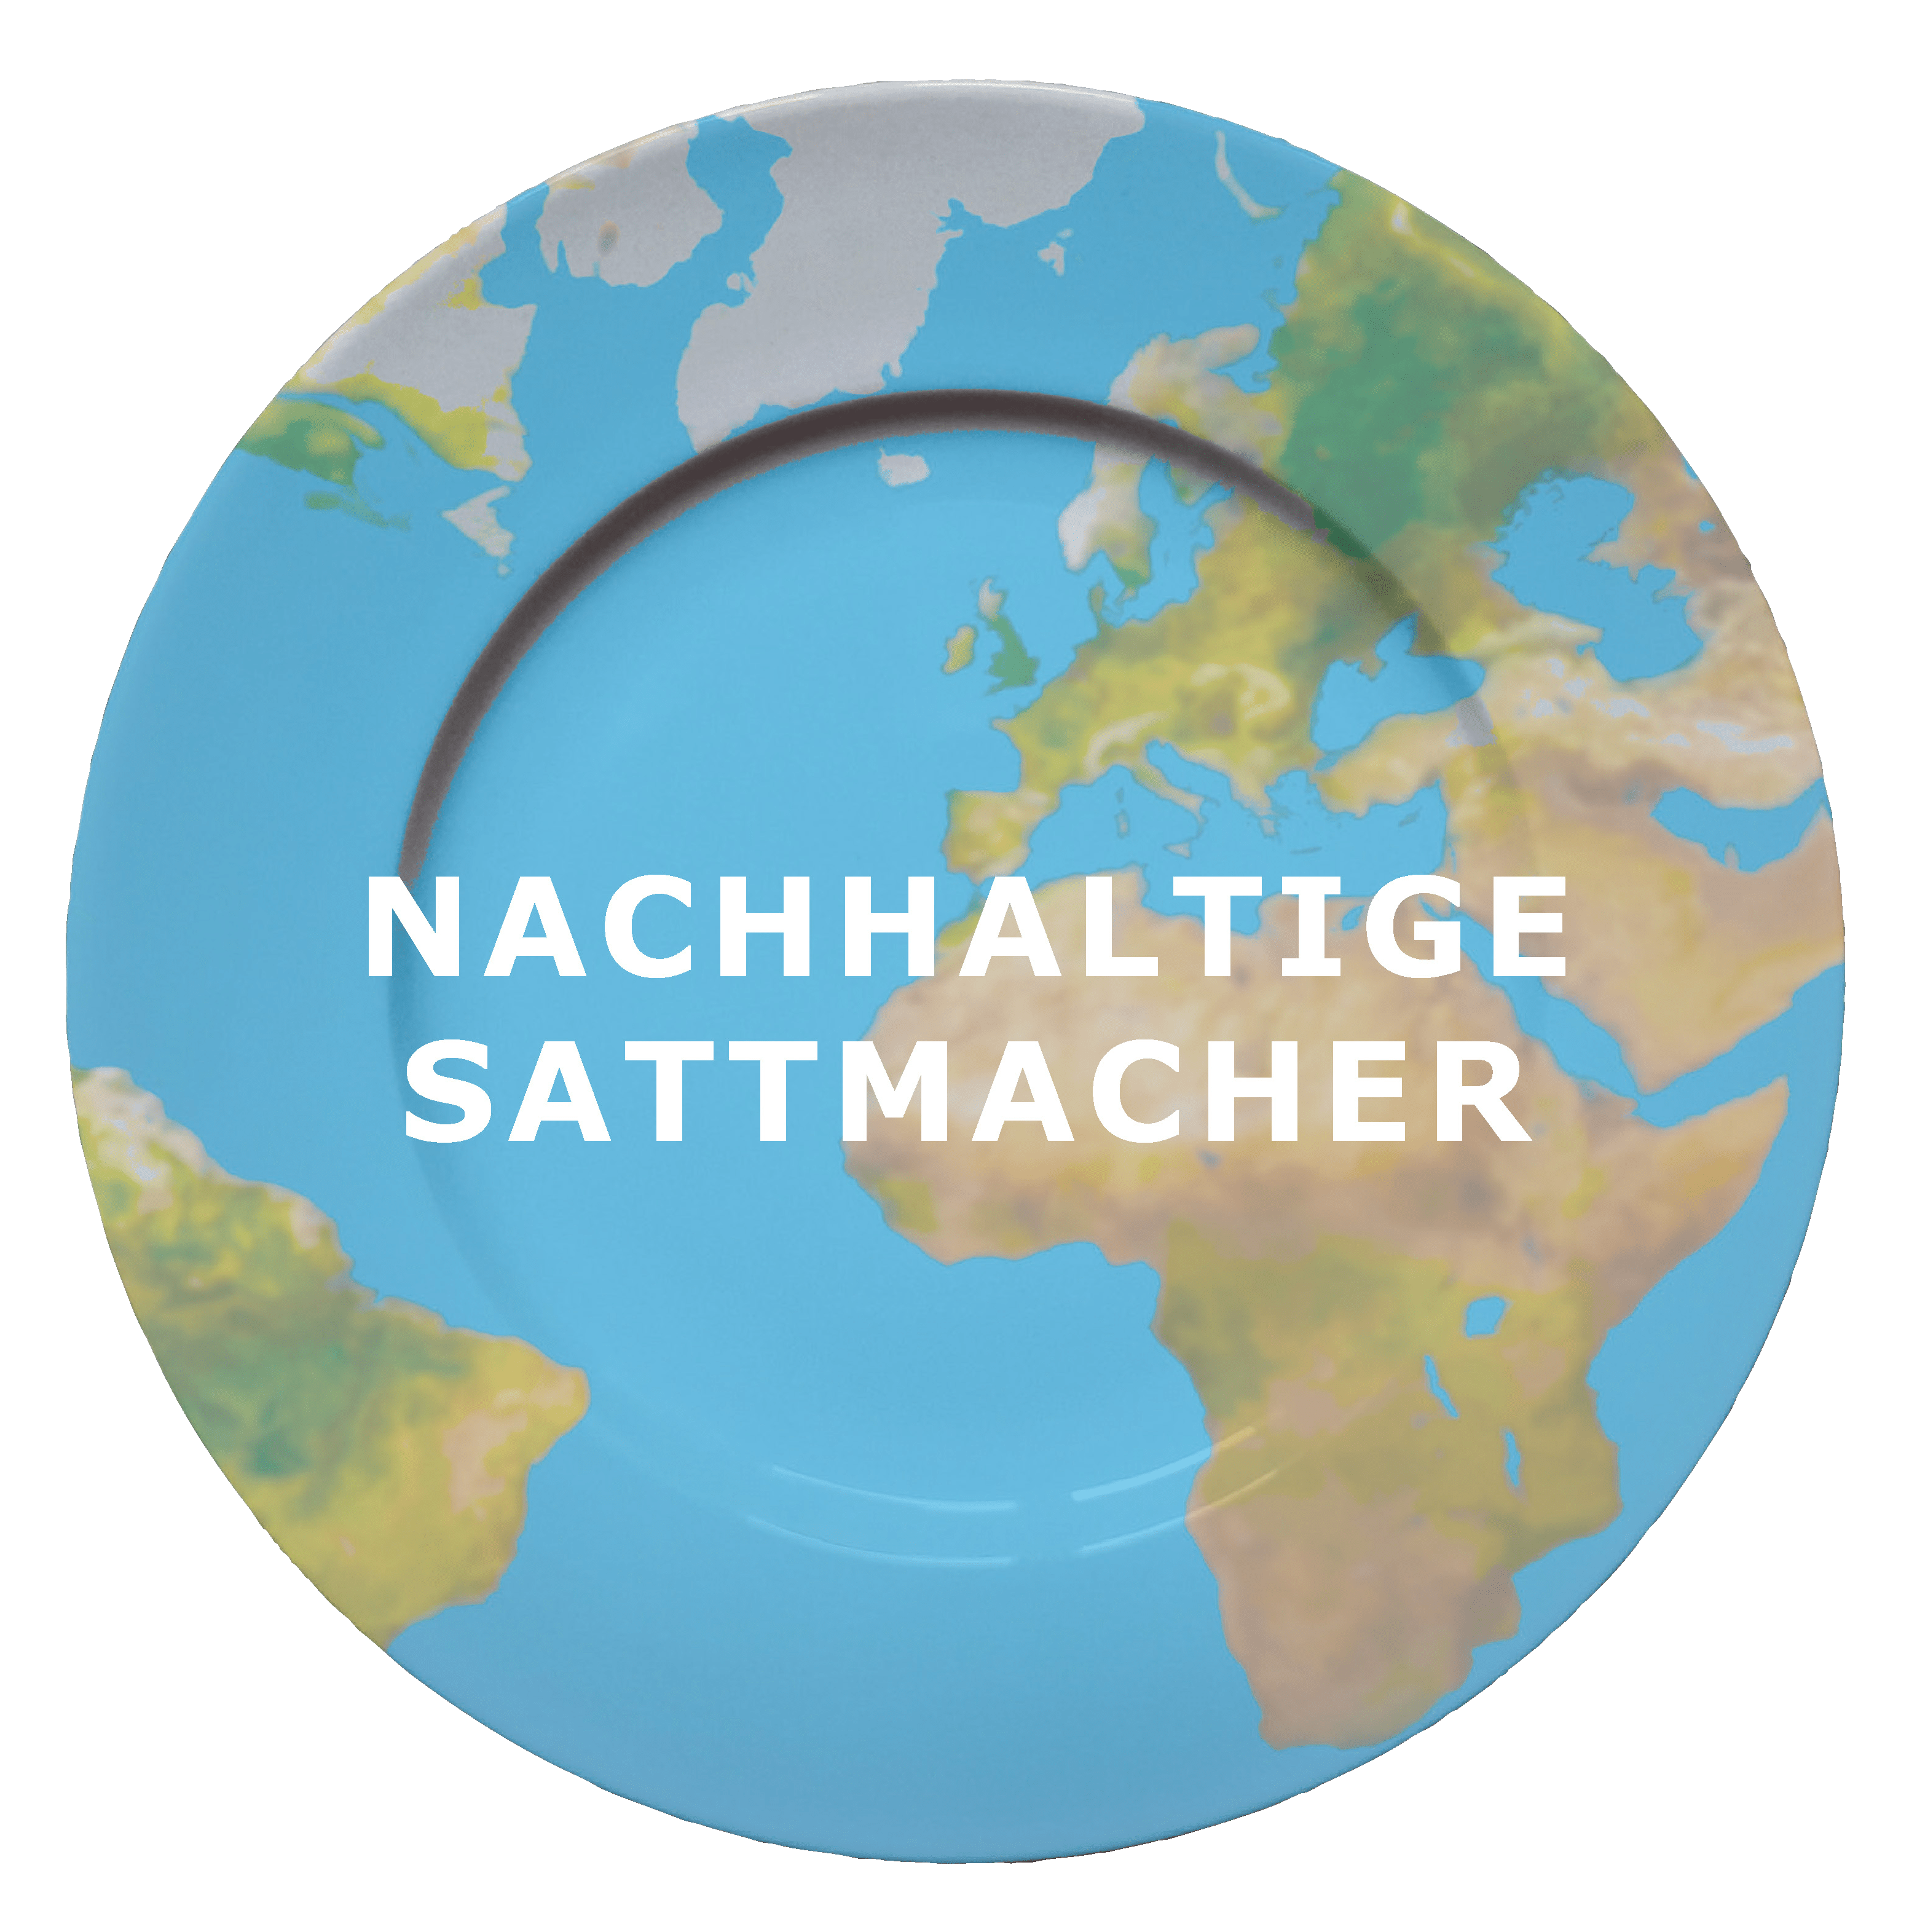 Sattmacher - Omas for Future